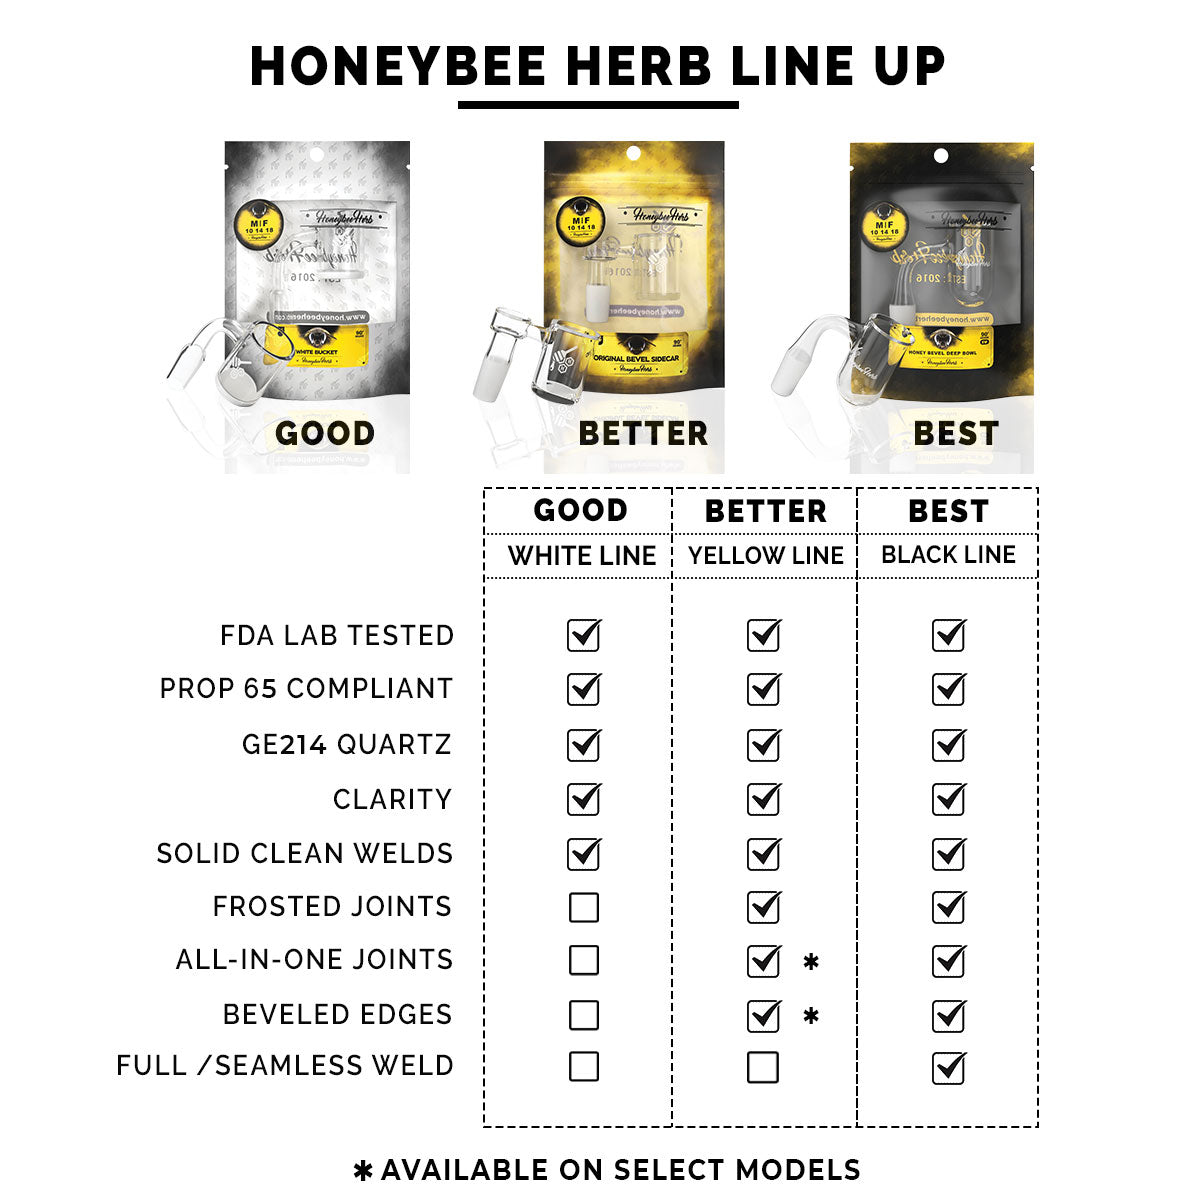 Honeybee Herb Quartz Banger lineup chart comparing features of Good, Better, Best categories